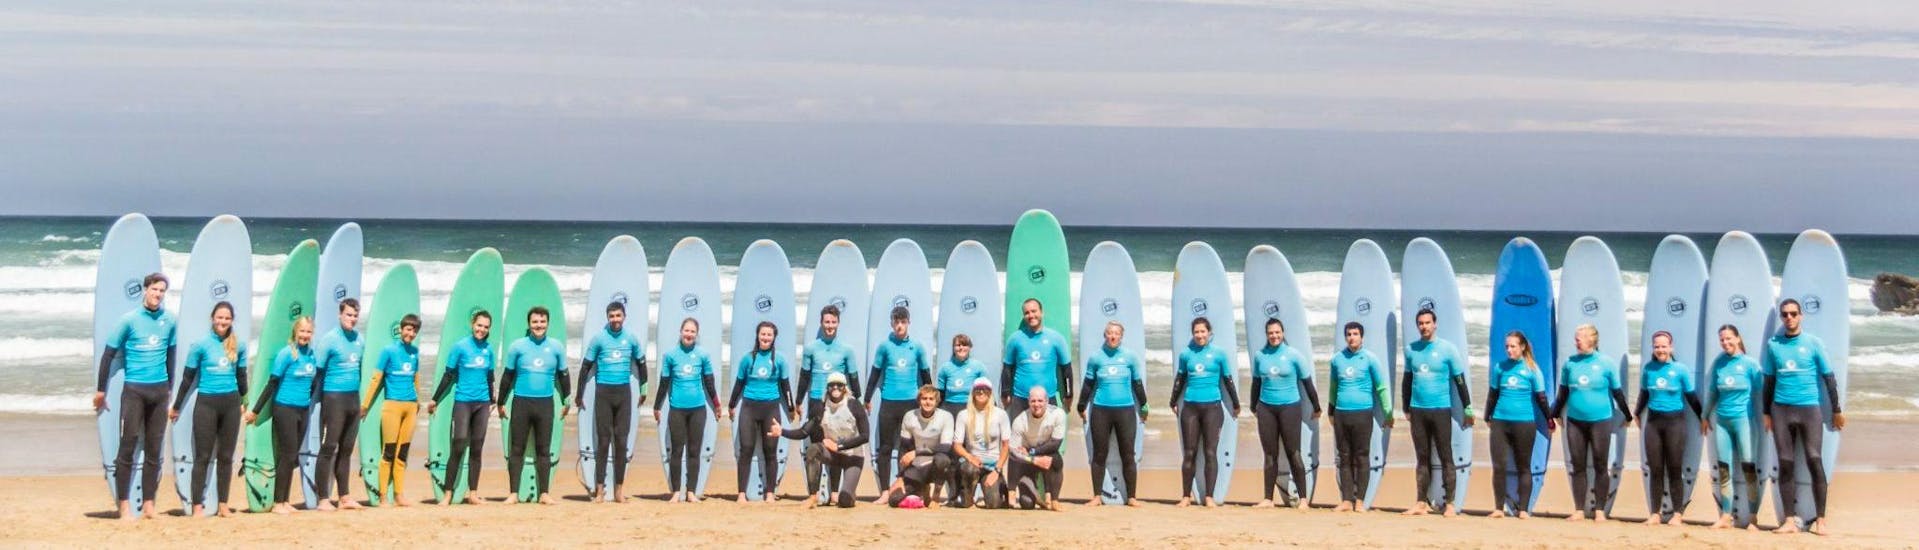 Curso de Surf en Sagres a partir de 8 años para todos los niveles.